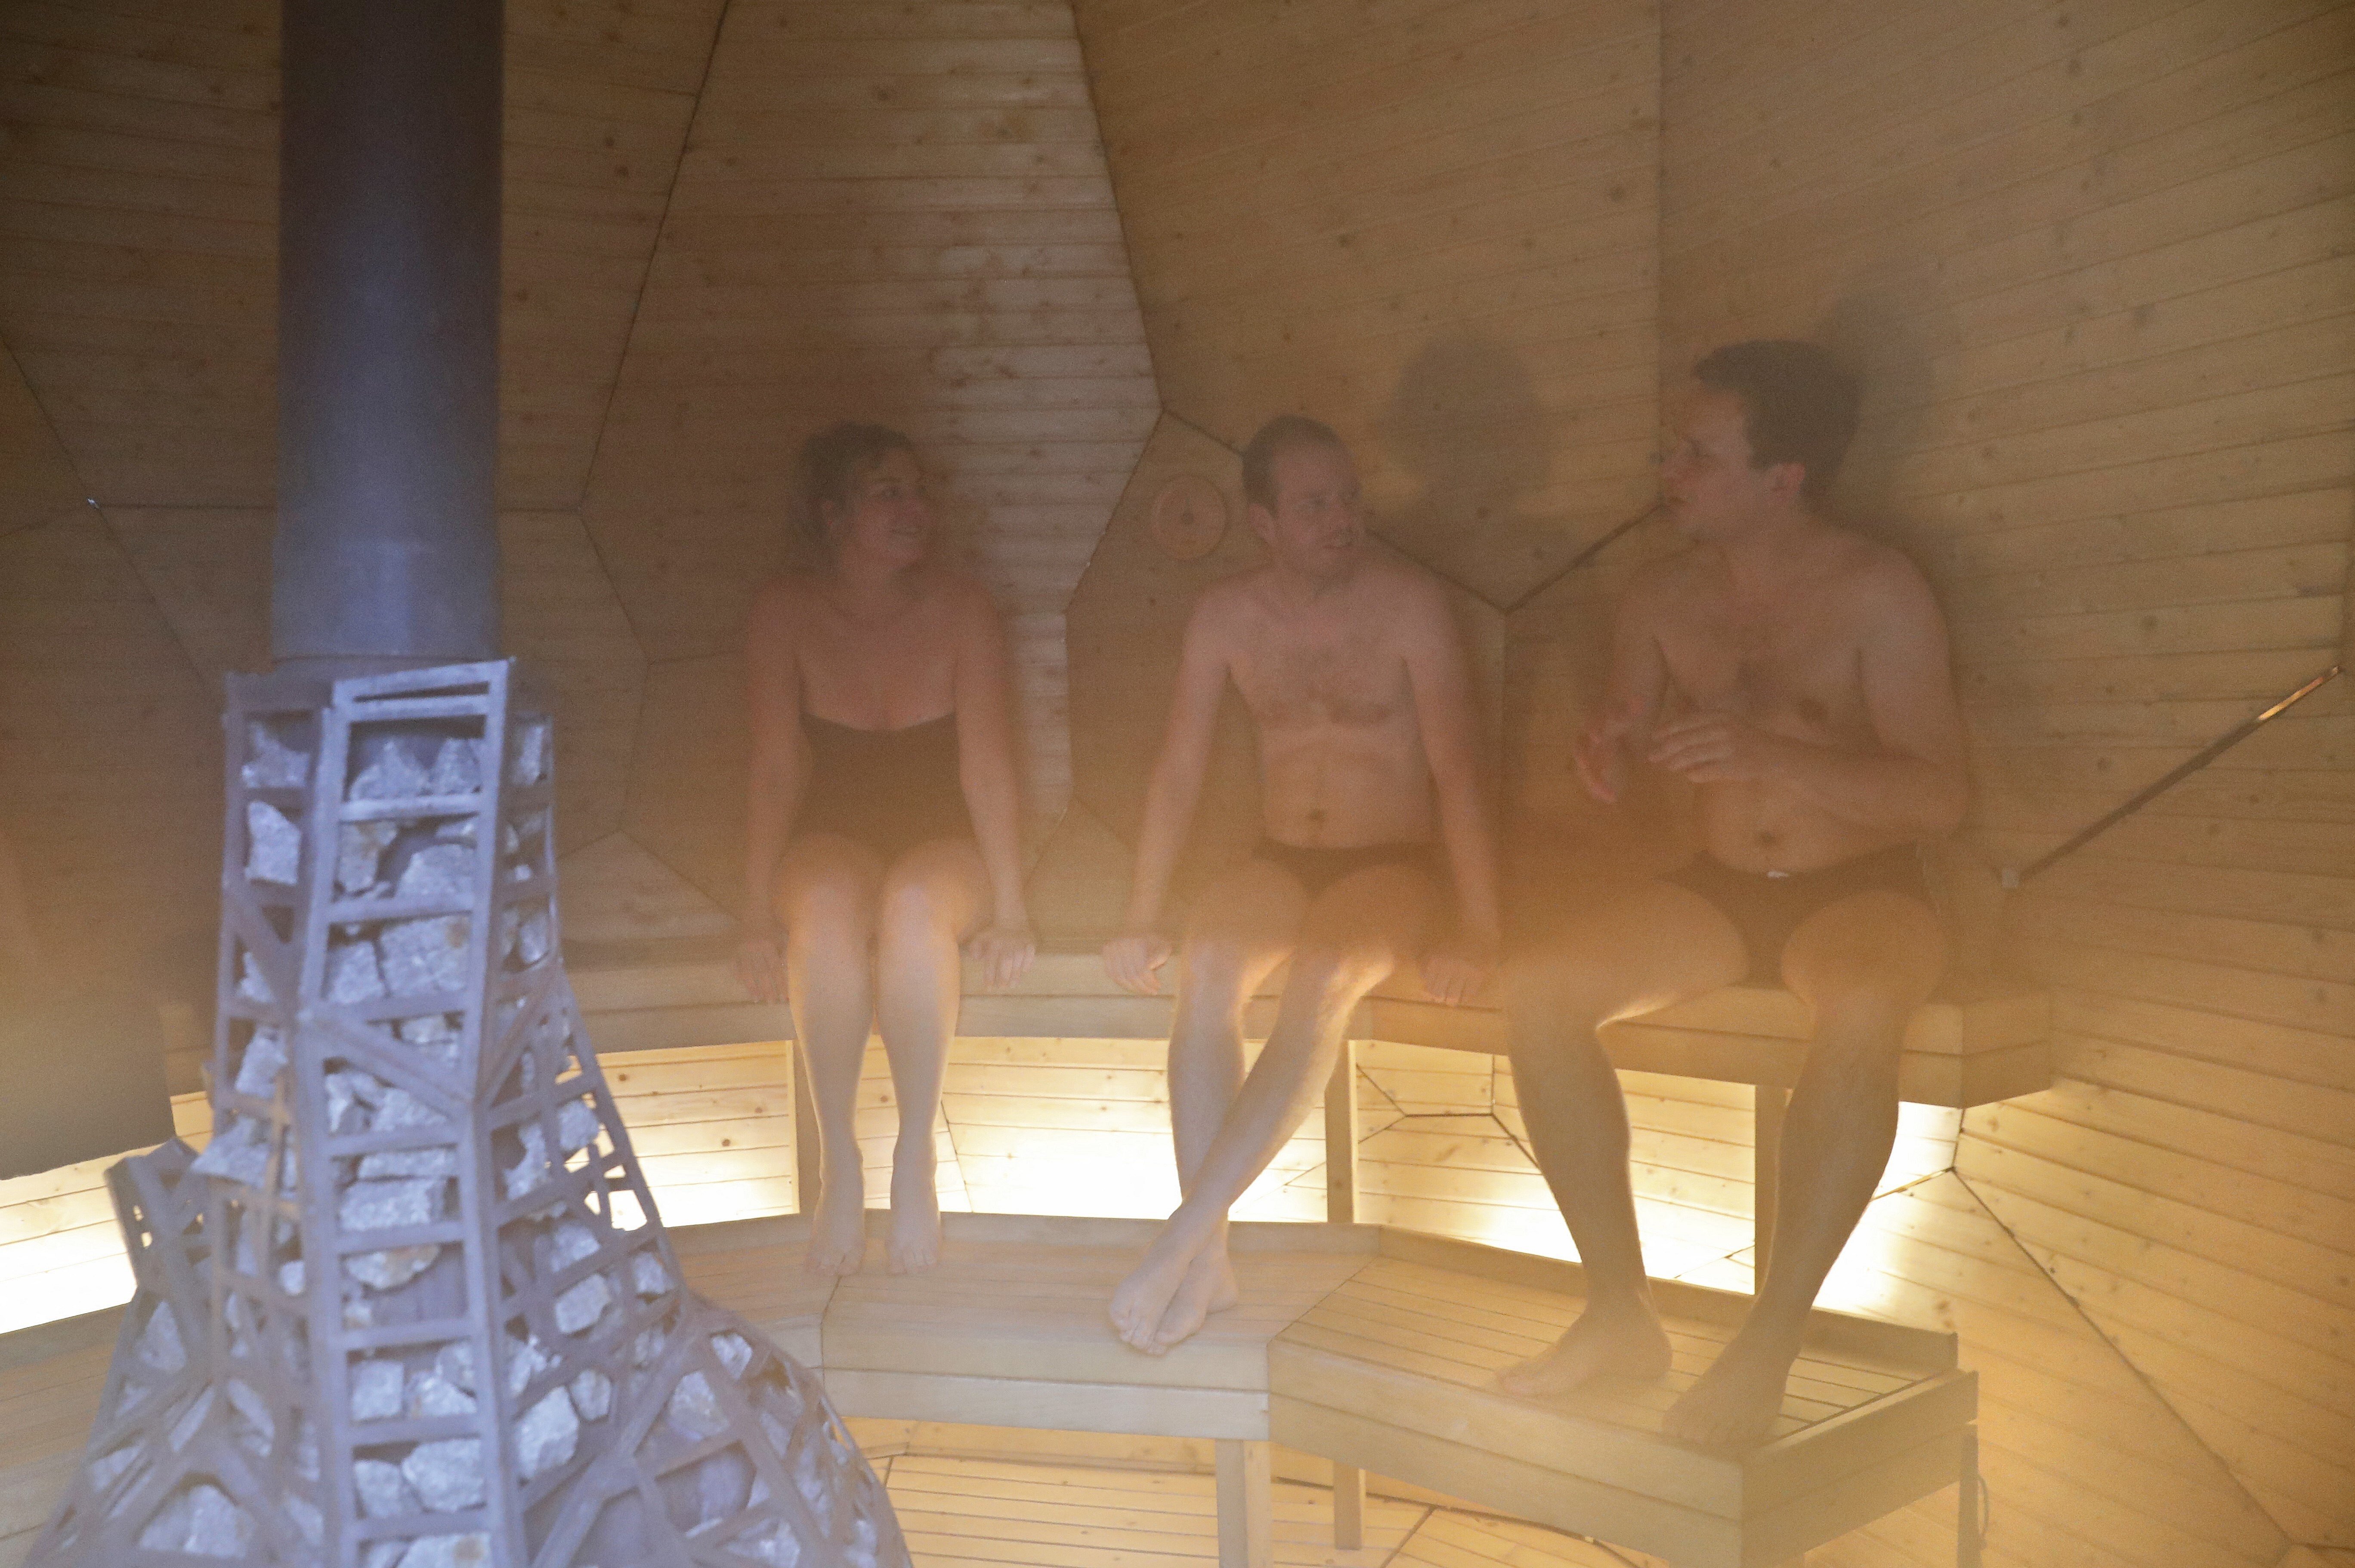 Tidligere Soveværelse sikkerhedsstillelse Nøgen-debatten raser: Her er der krav om badetøj i sauna | TV2 Østjylland